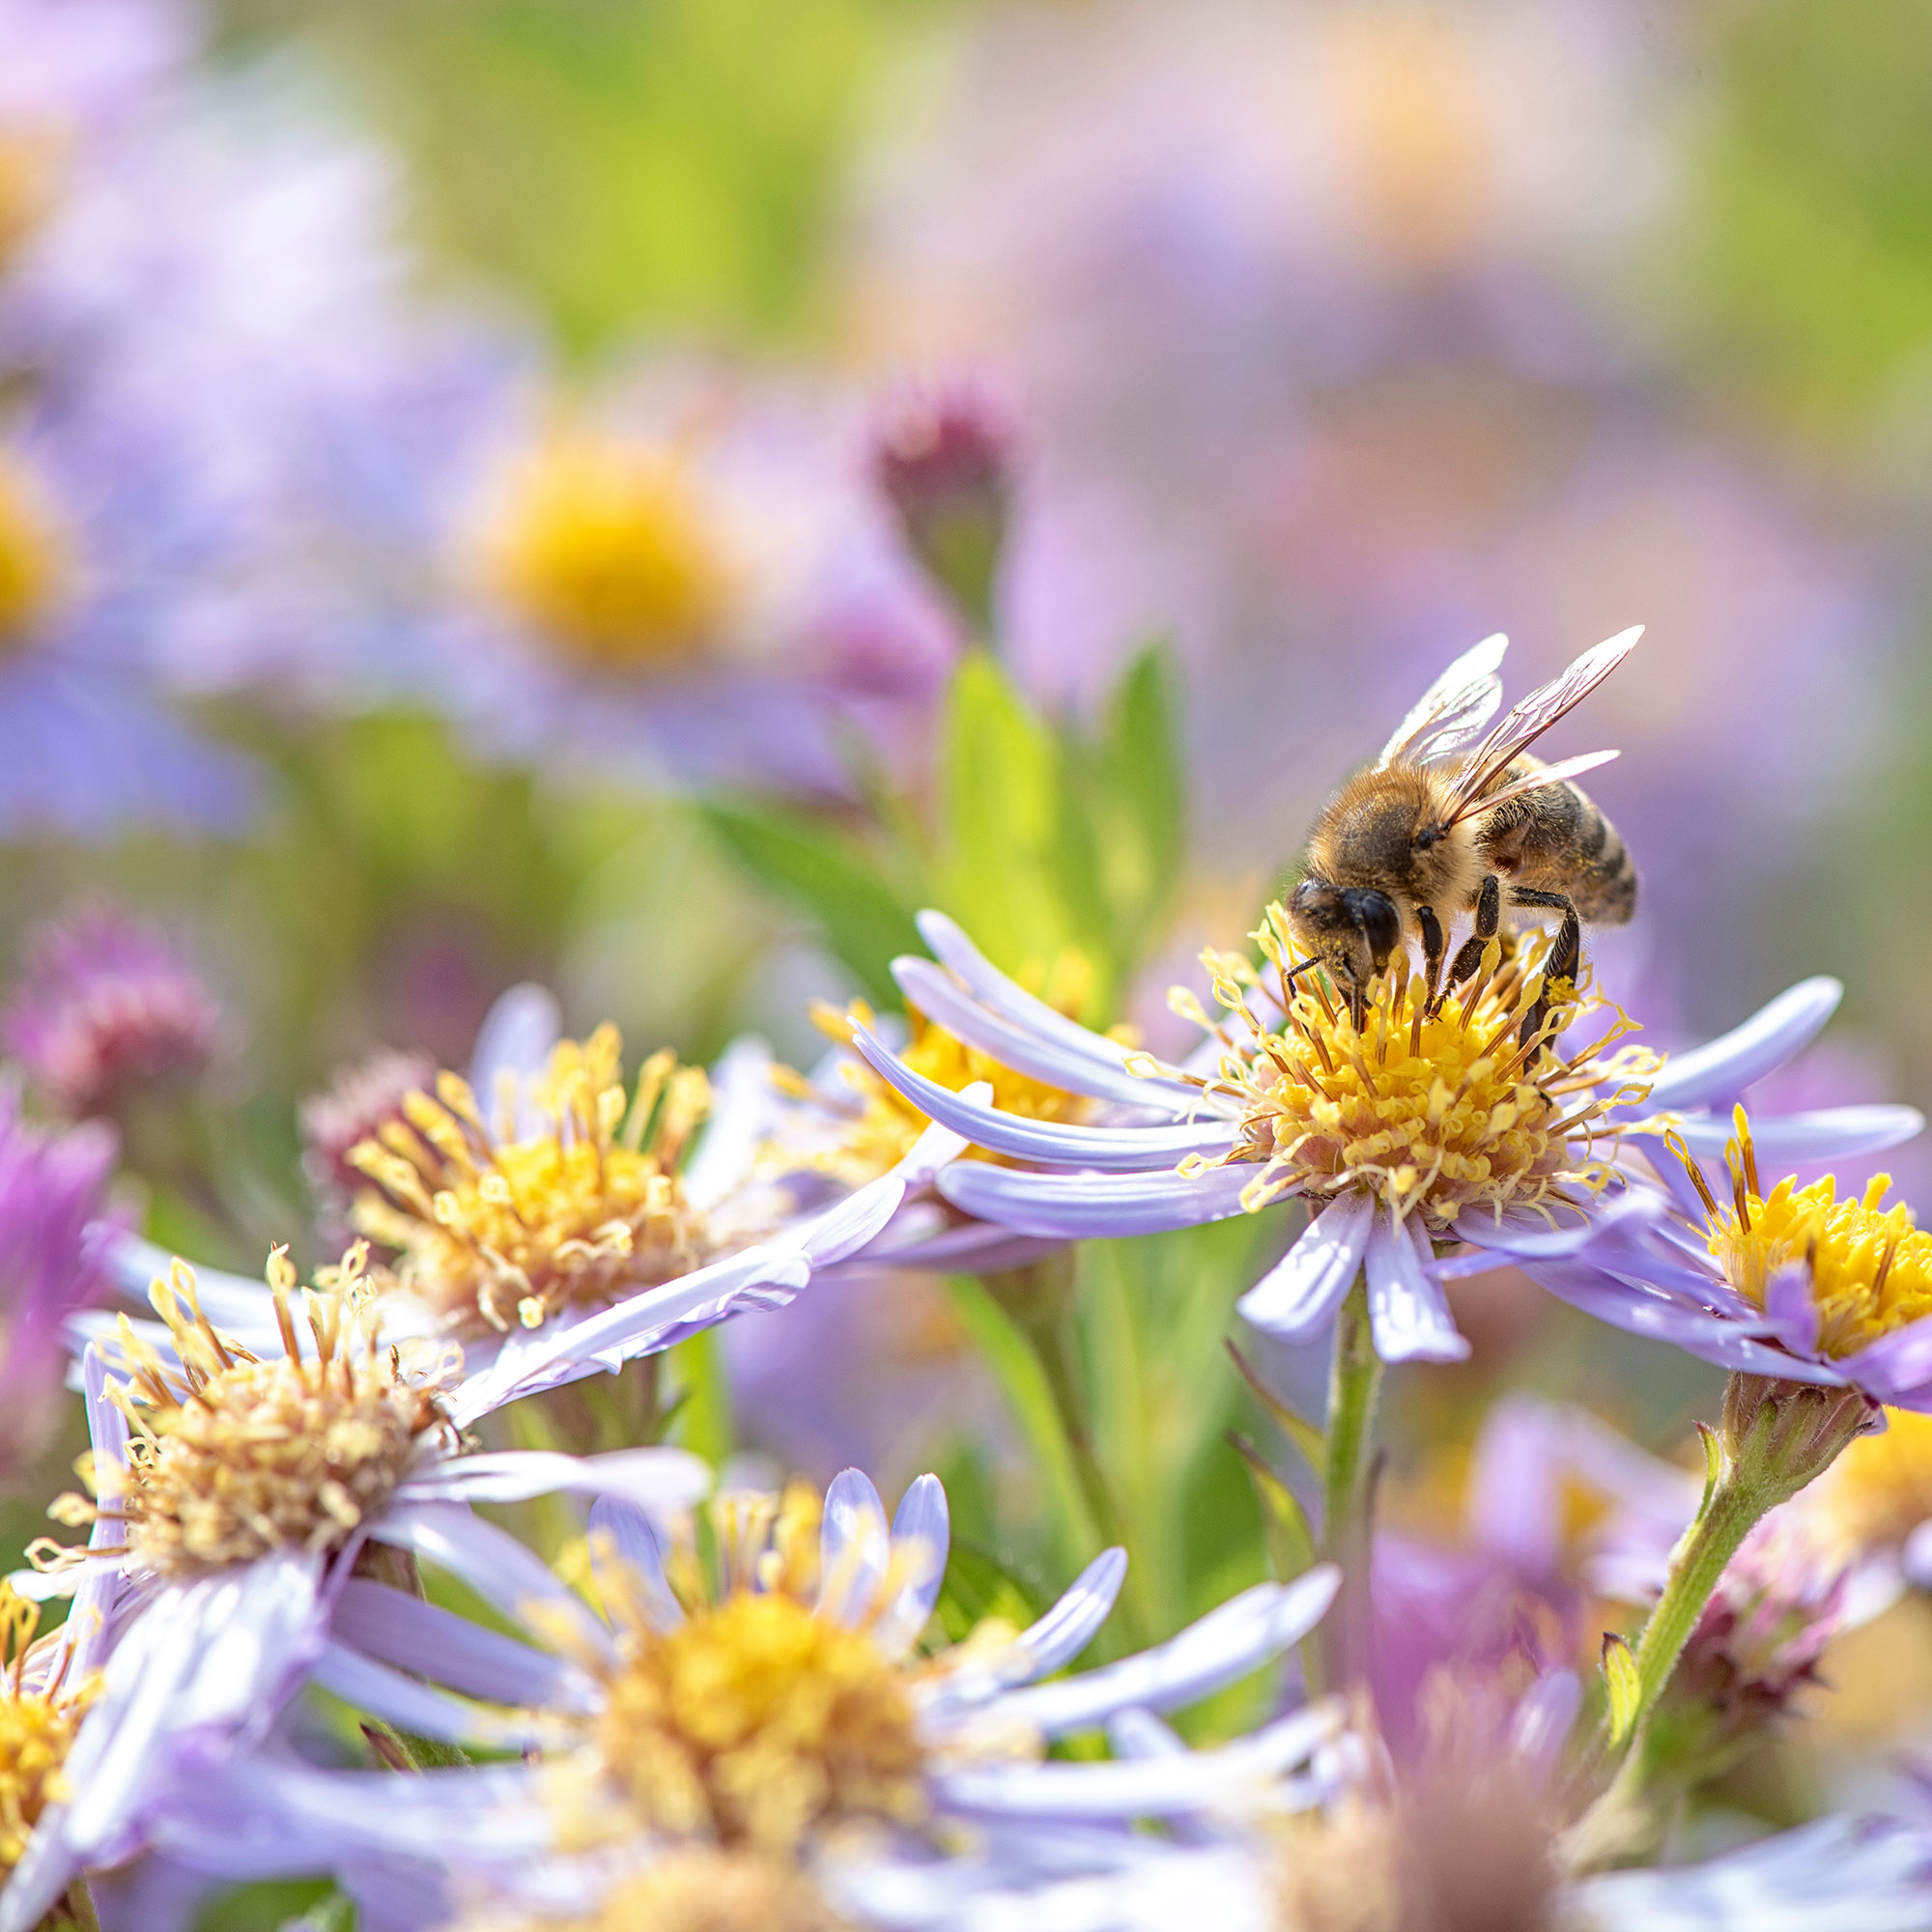 Tampilan jarak dekat dari lebah pada bunga ungu